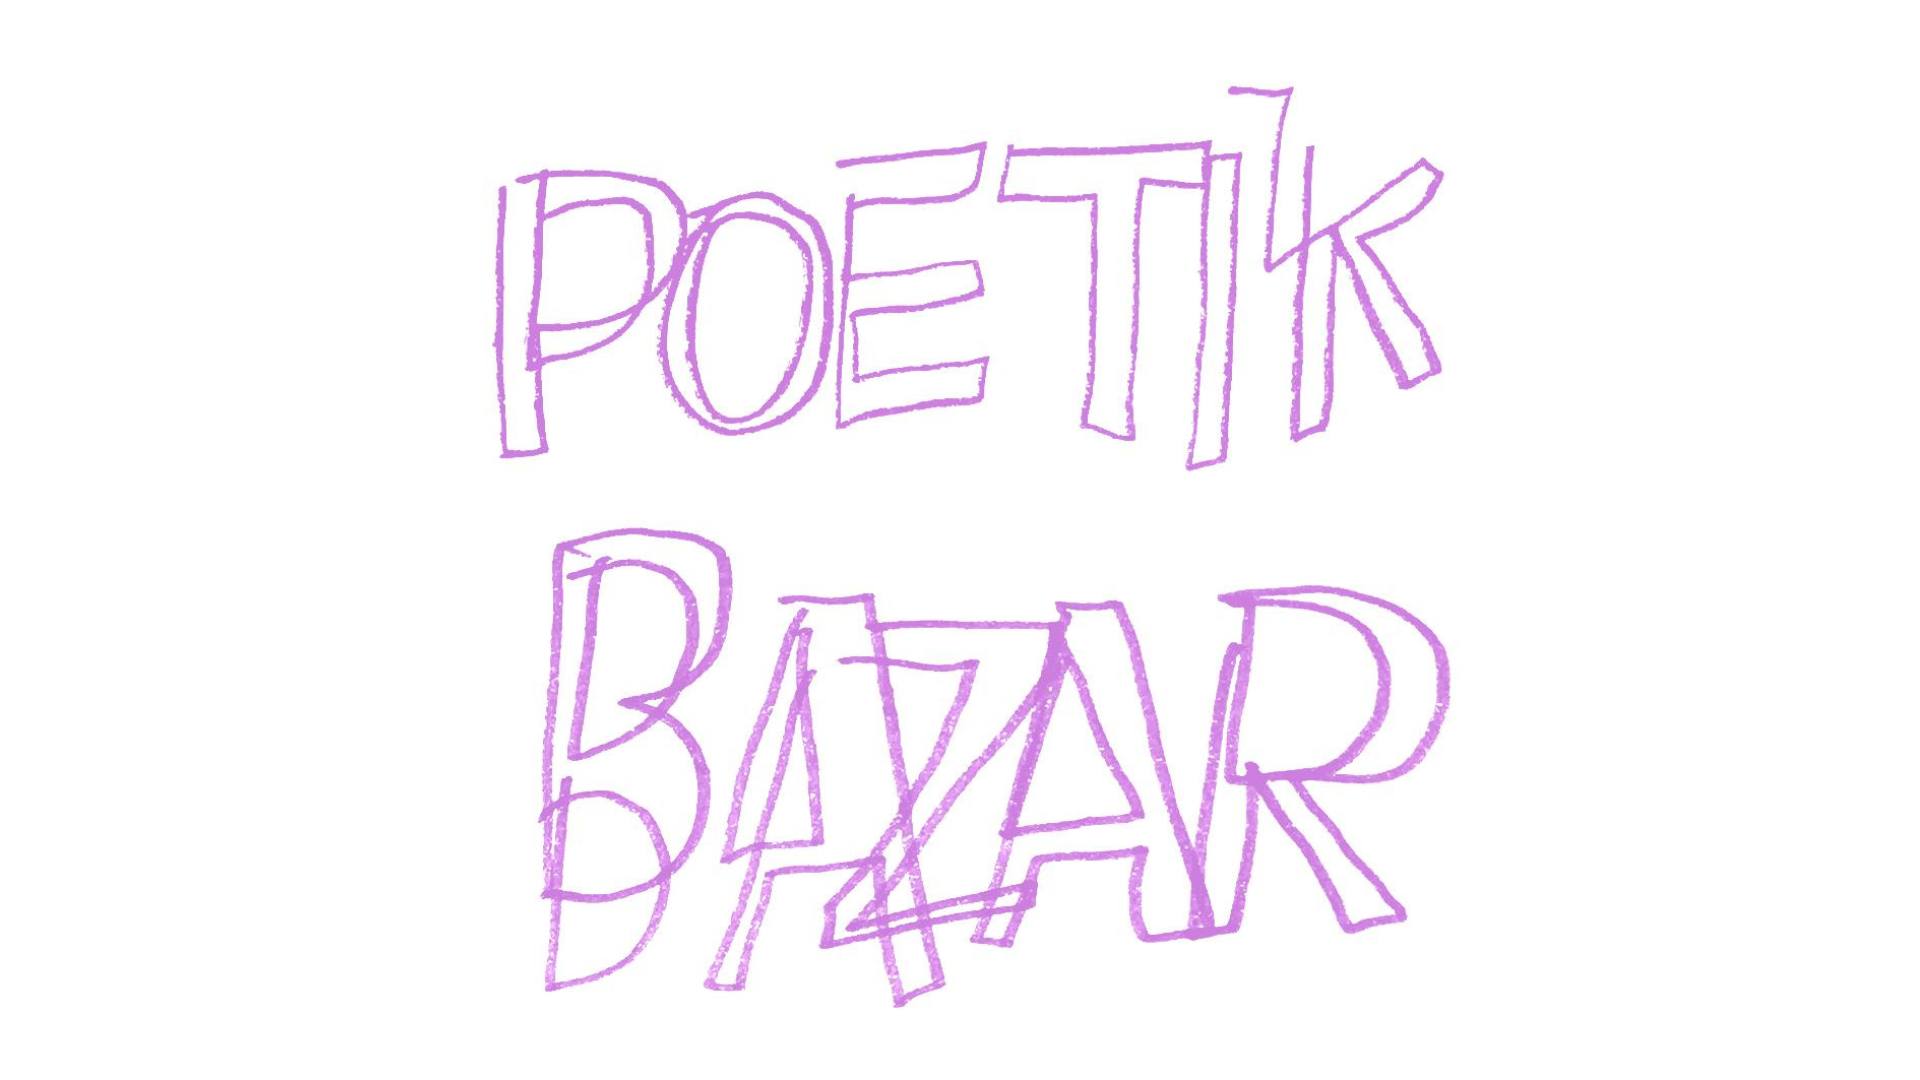 Poetik Bazar #3 - Marché de la poésie de Bruxelles I Poëziemarkt van Brussel